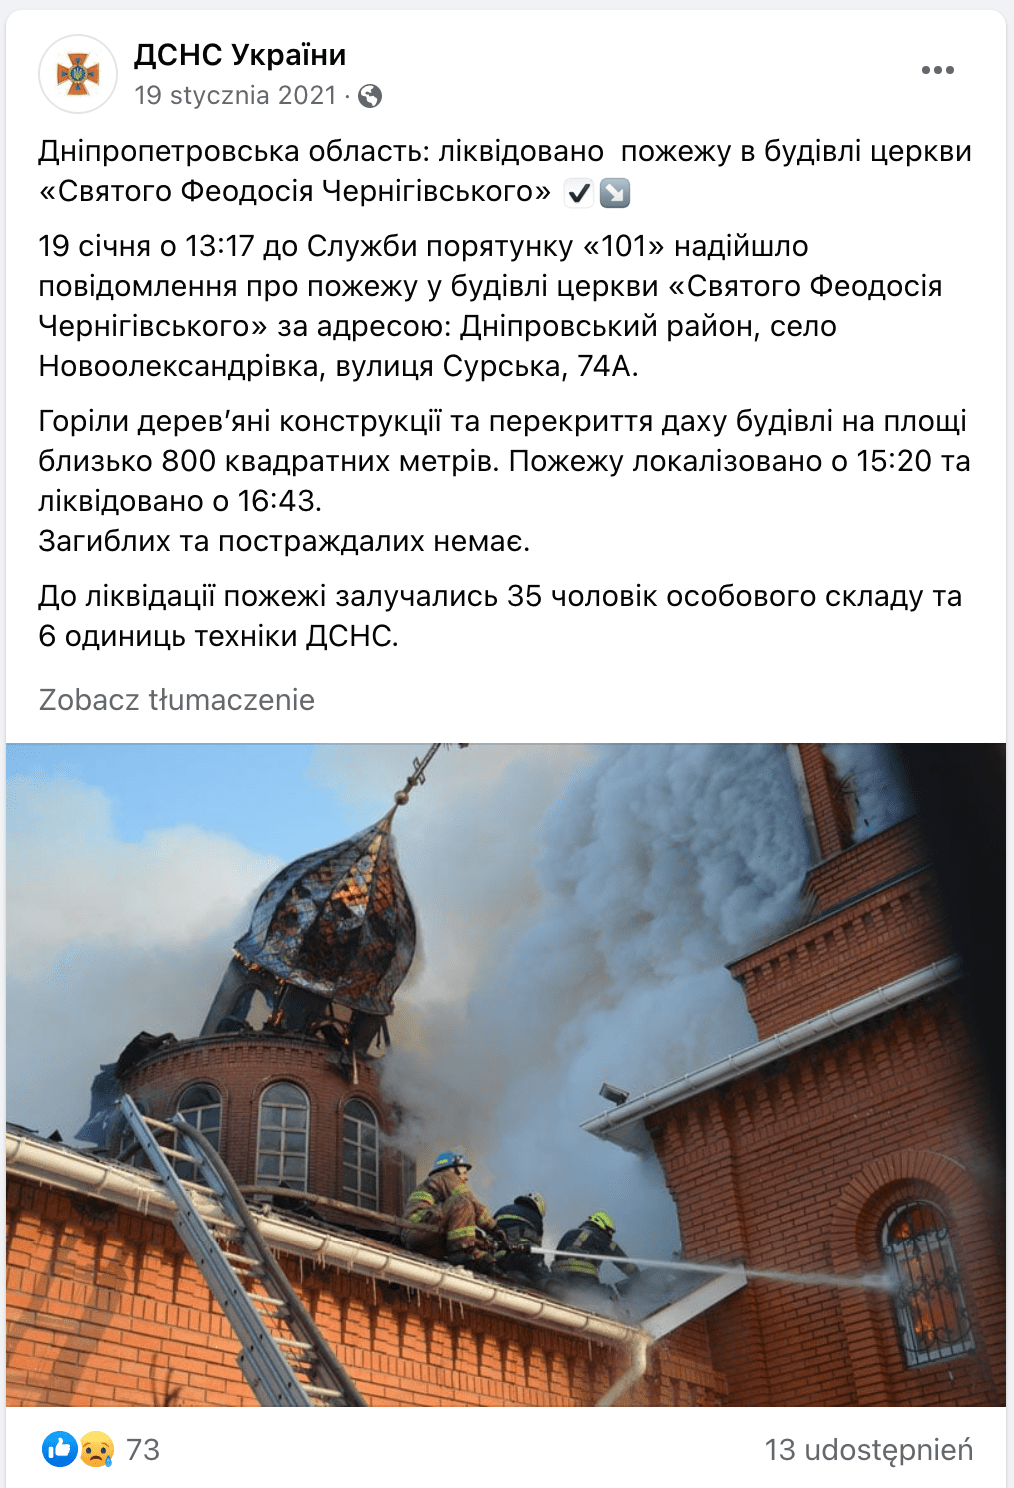 Zrzut ekranu omawianego posta na Facebooku Państwowej Służby Ratunkowej Ukrainy. Na załączonej ilustracji jest grupa strażaków na dachu budowli. Za nimi wali się jedna z wież ze złotą kopułą.